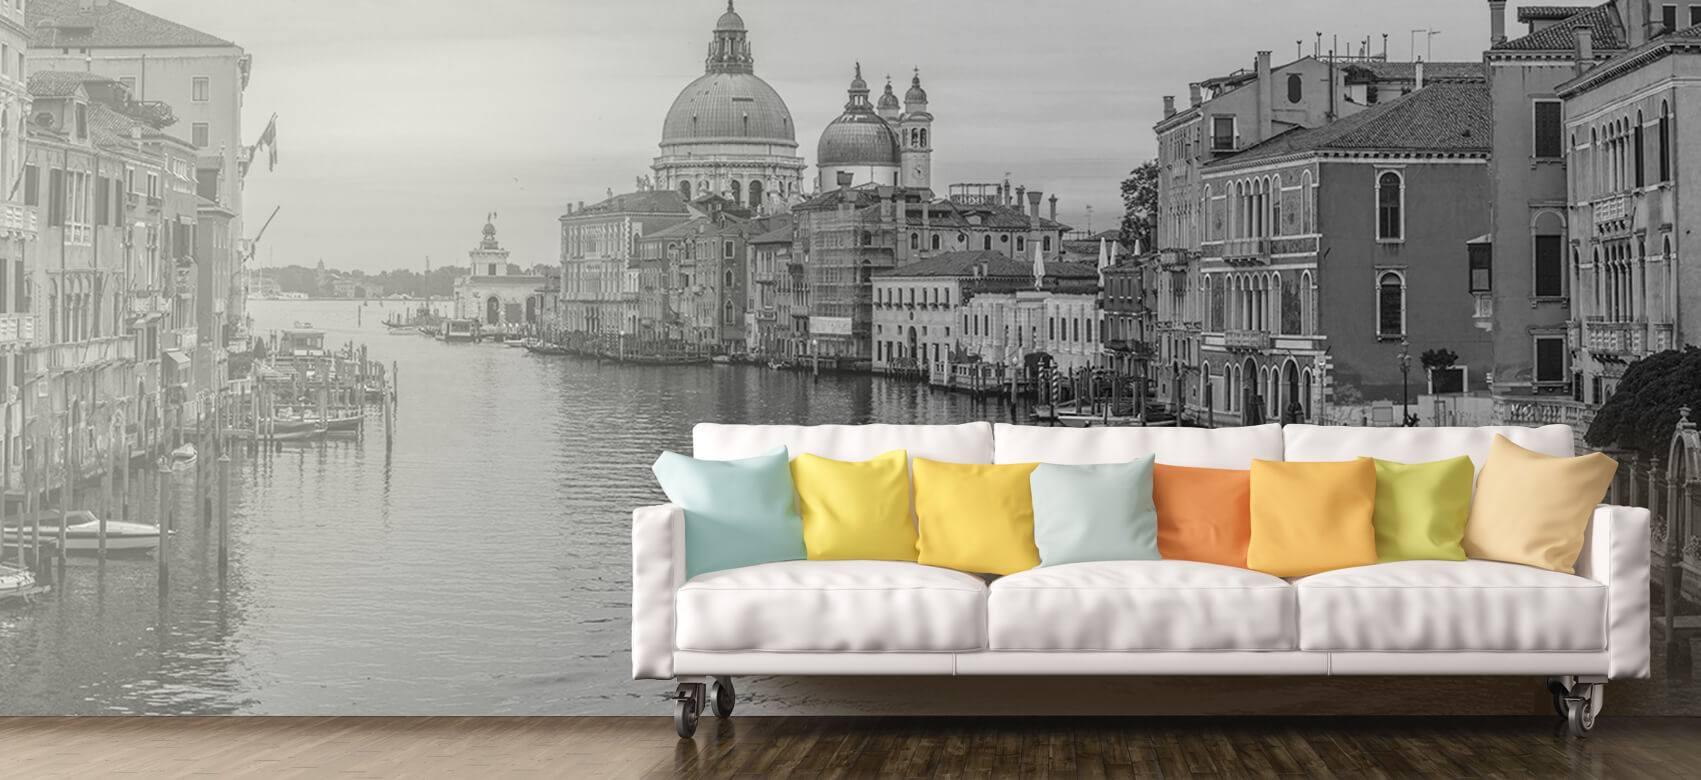 Ciudades - Papel pintado con Canal en Venecia - Salón 11